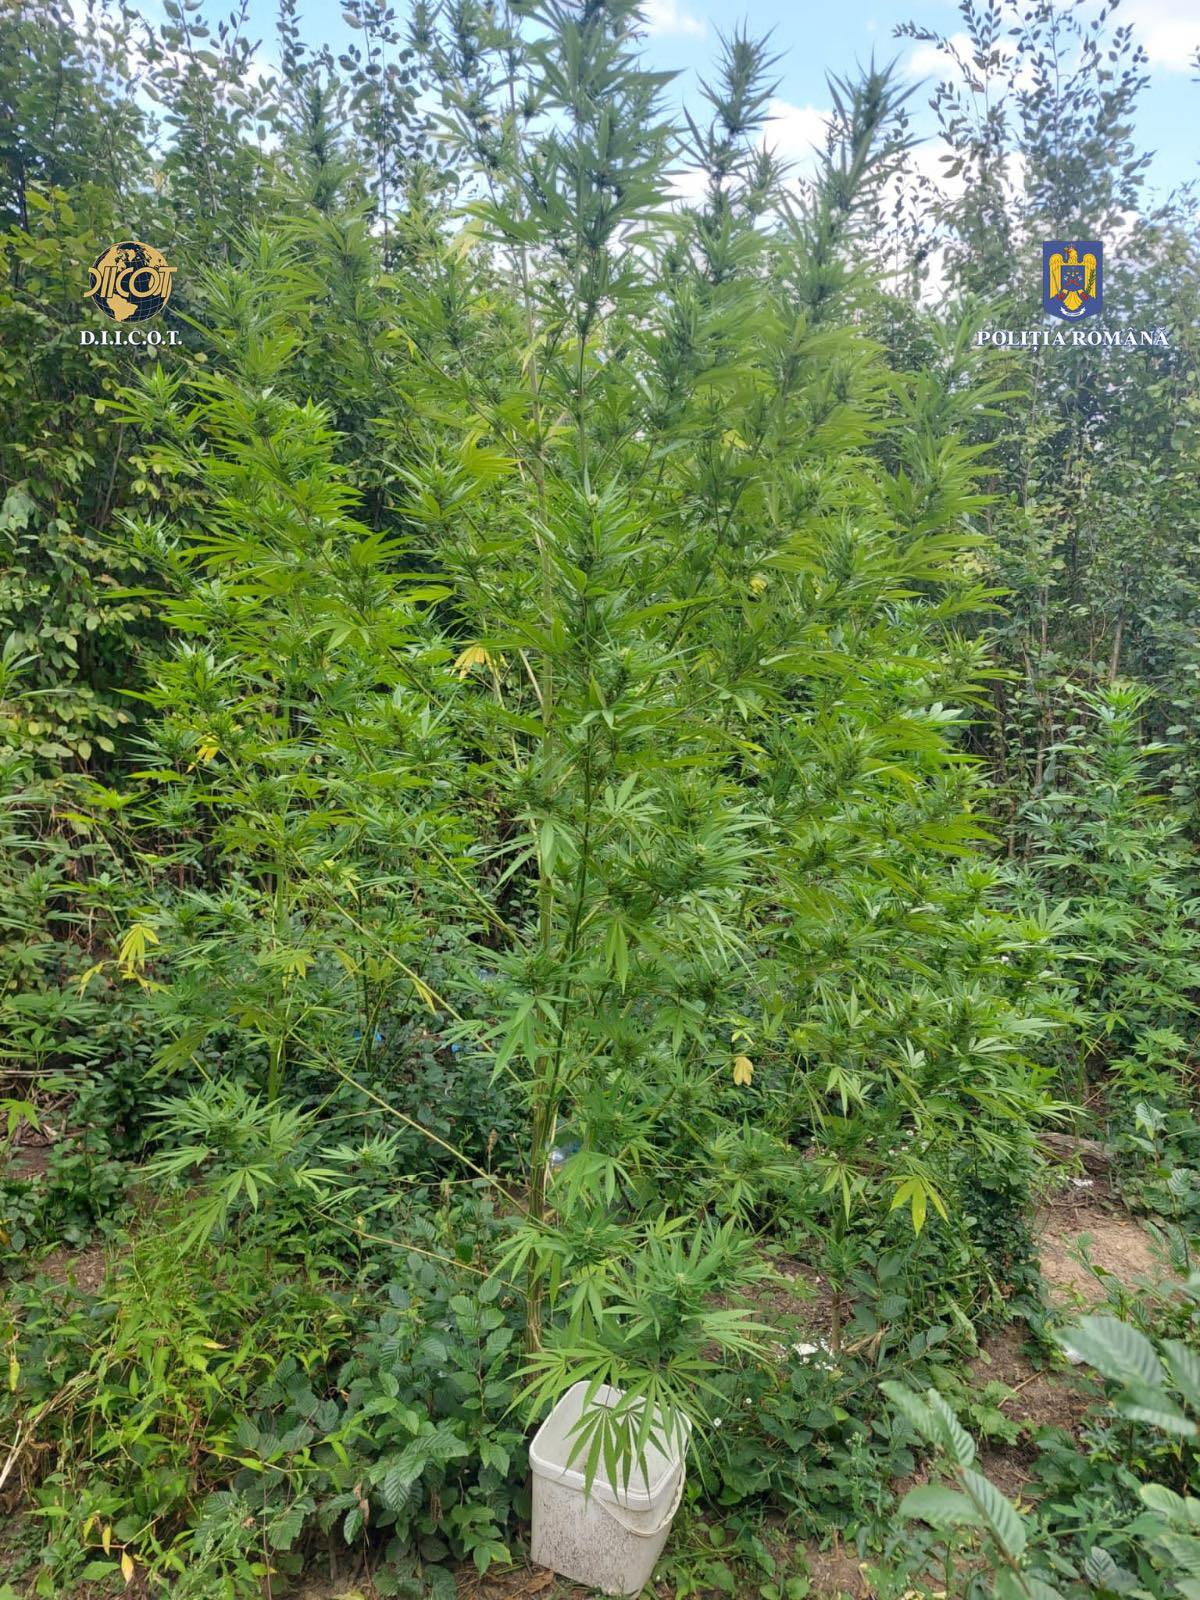 Cultură de cannabis, descoperită în pădurea de la Ocnița